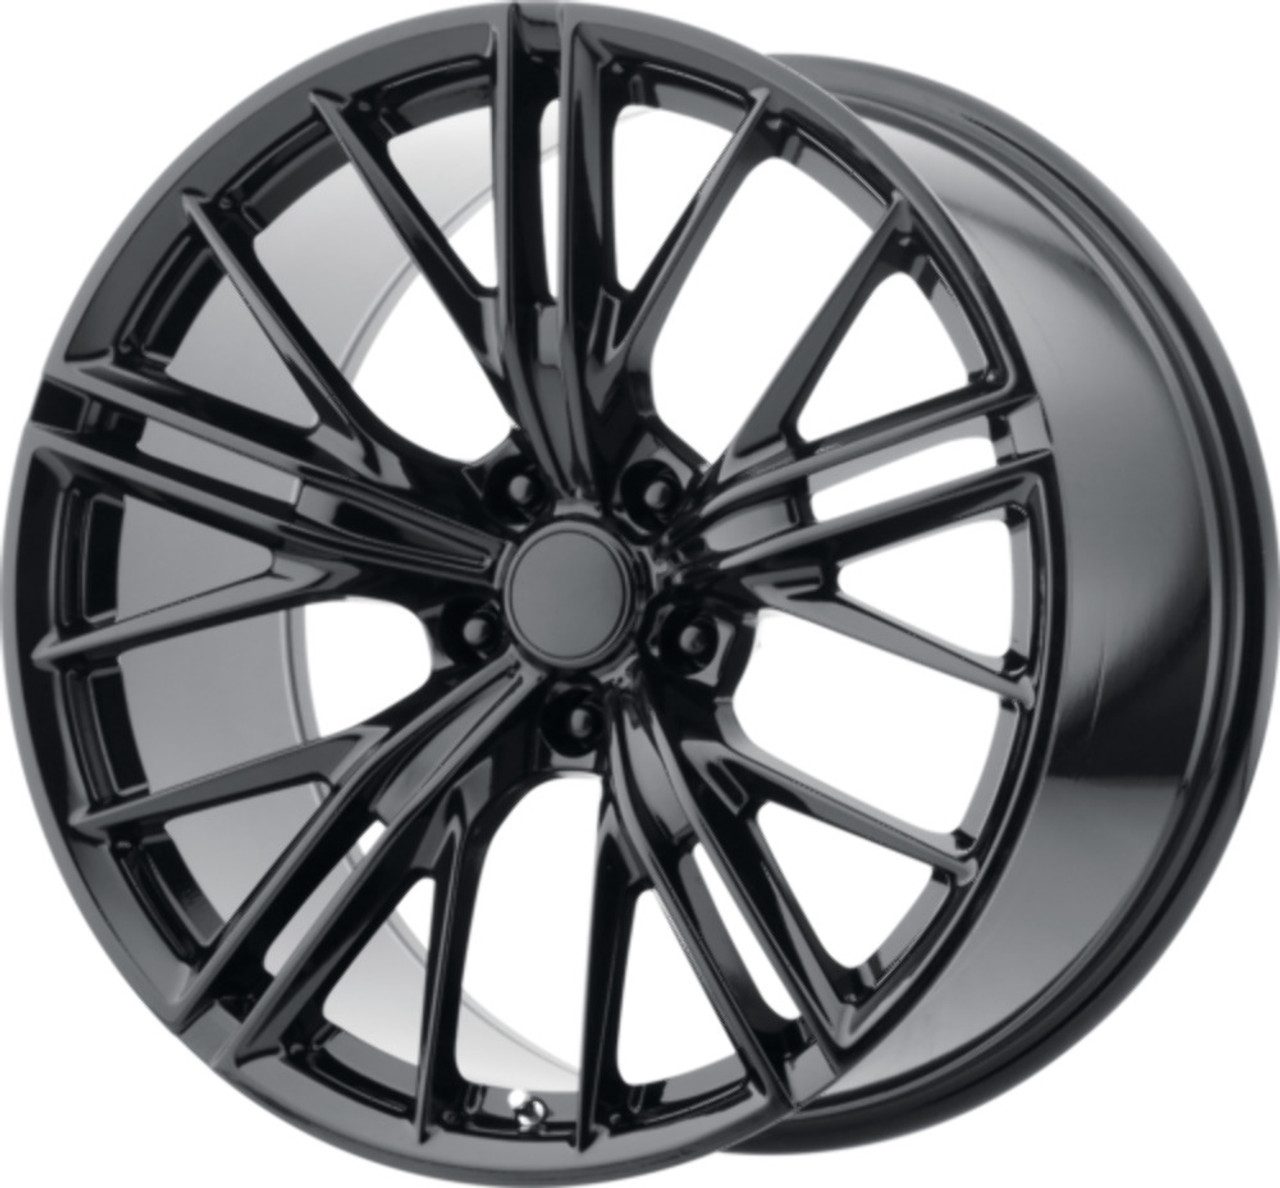 Performance Replicas PR194 20x9 5x120 Gloss Black Wheel 20" 30mm Rim